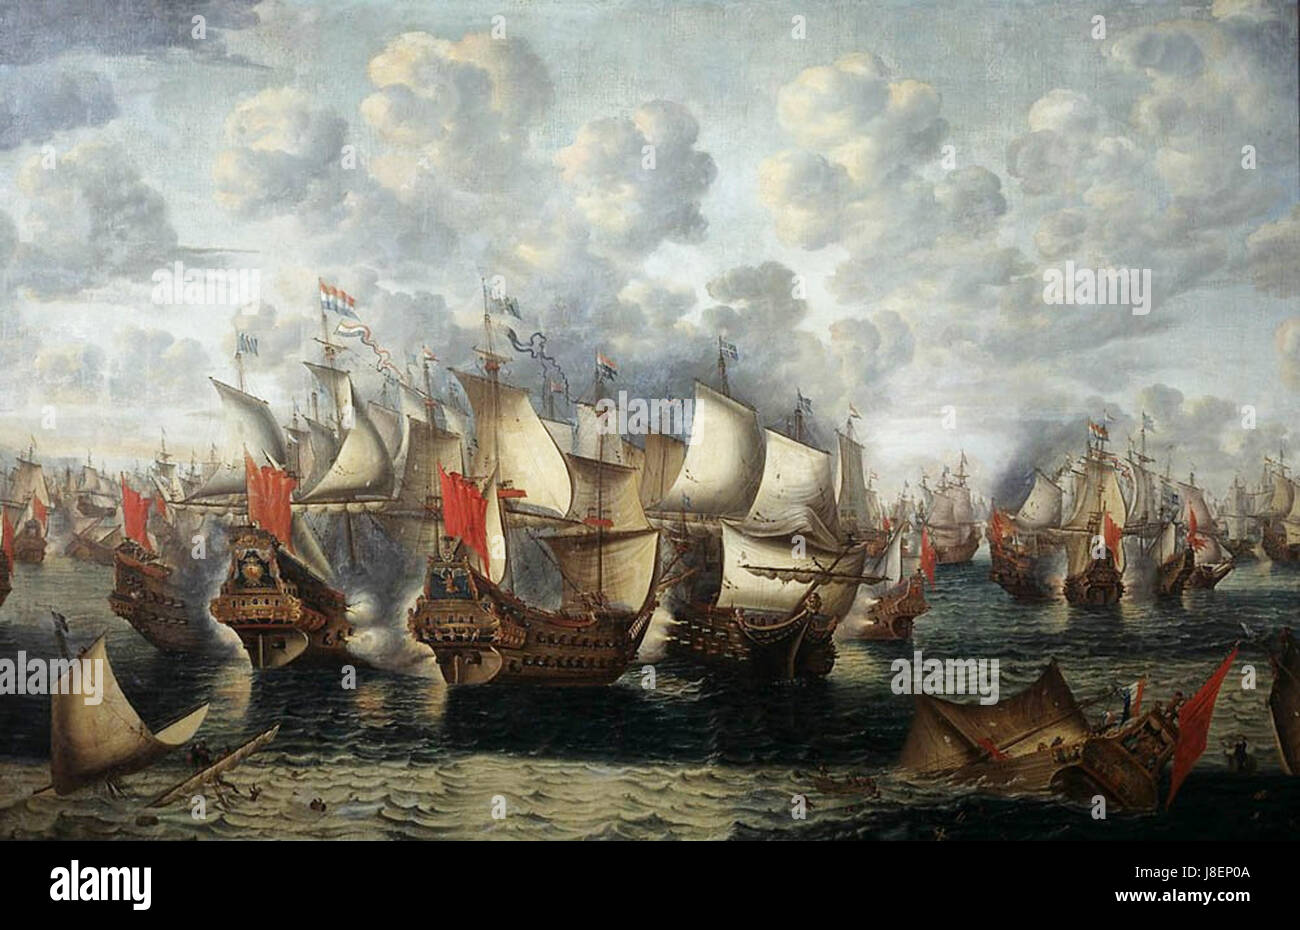 Eerste fase van de Zeeslag in de Sont   First phase of the Battle of the Sound   November 8 1658 (Jan Abrahamsz Beerstraten, 1660) Stock Photo